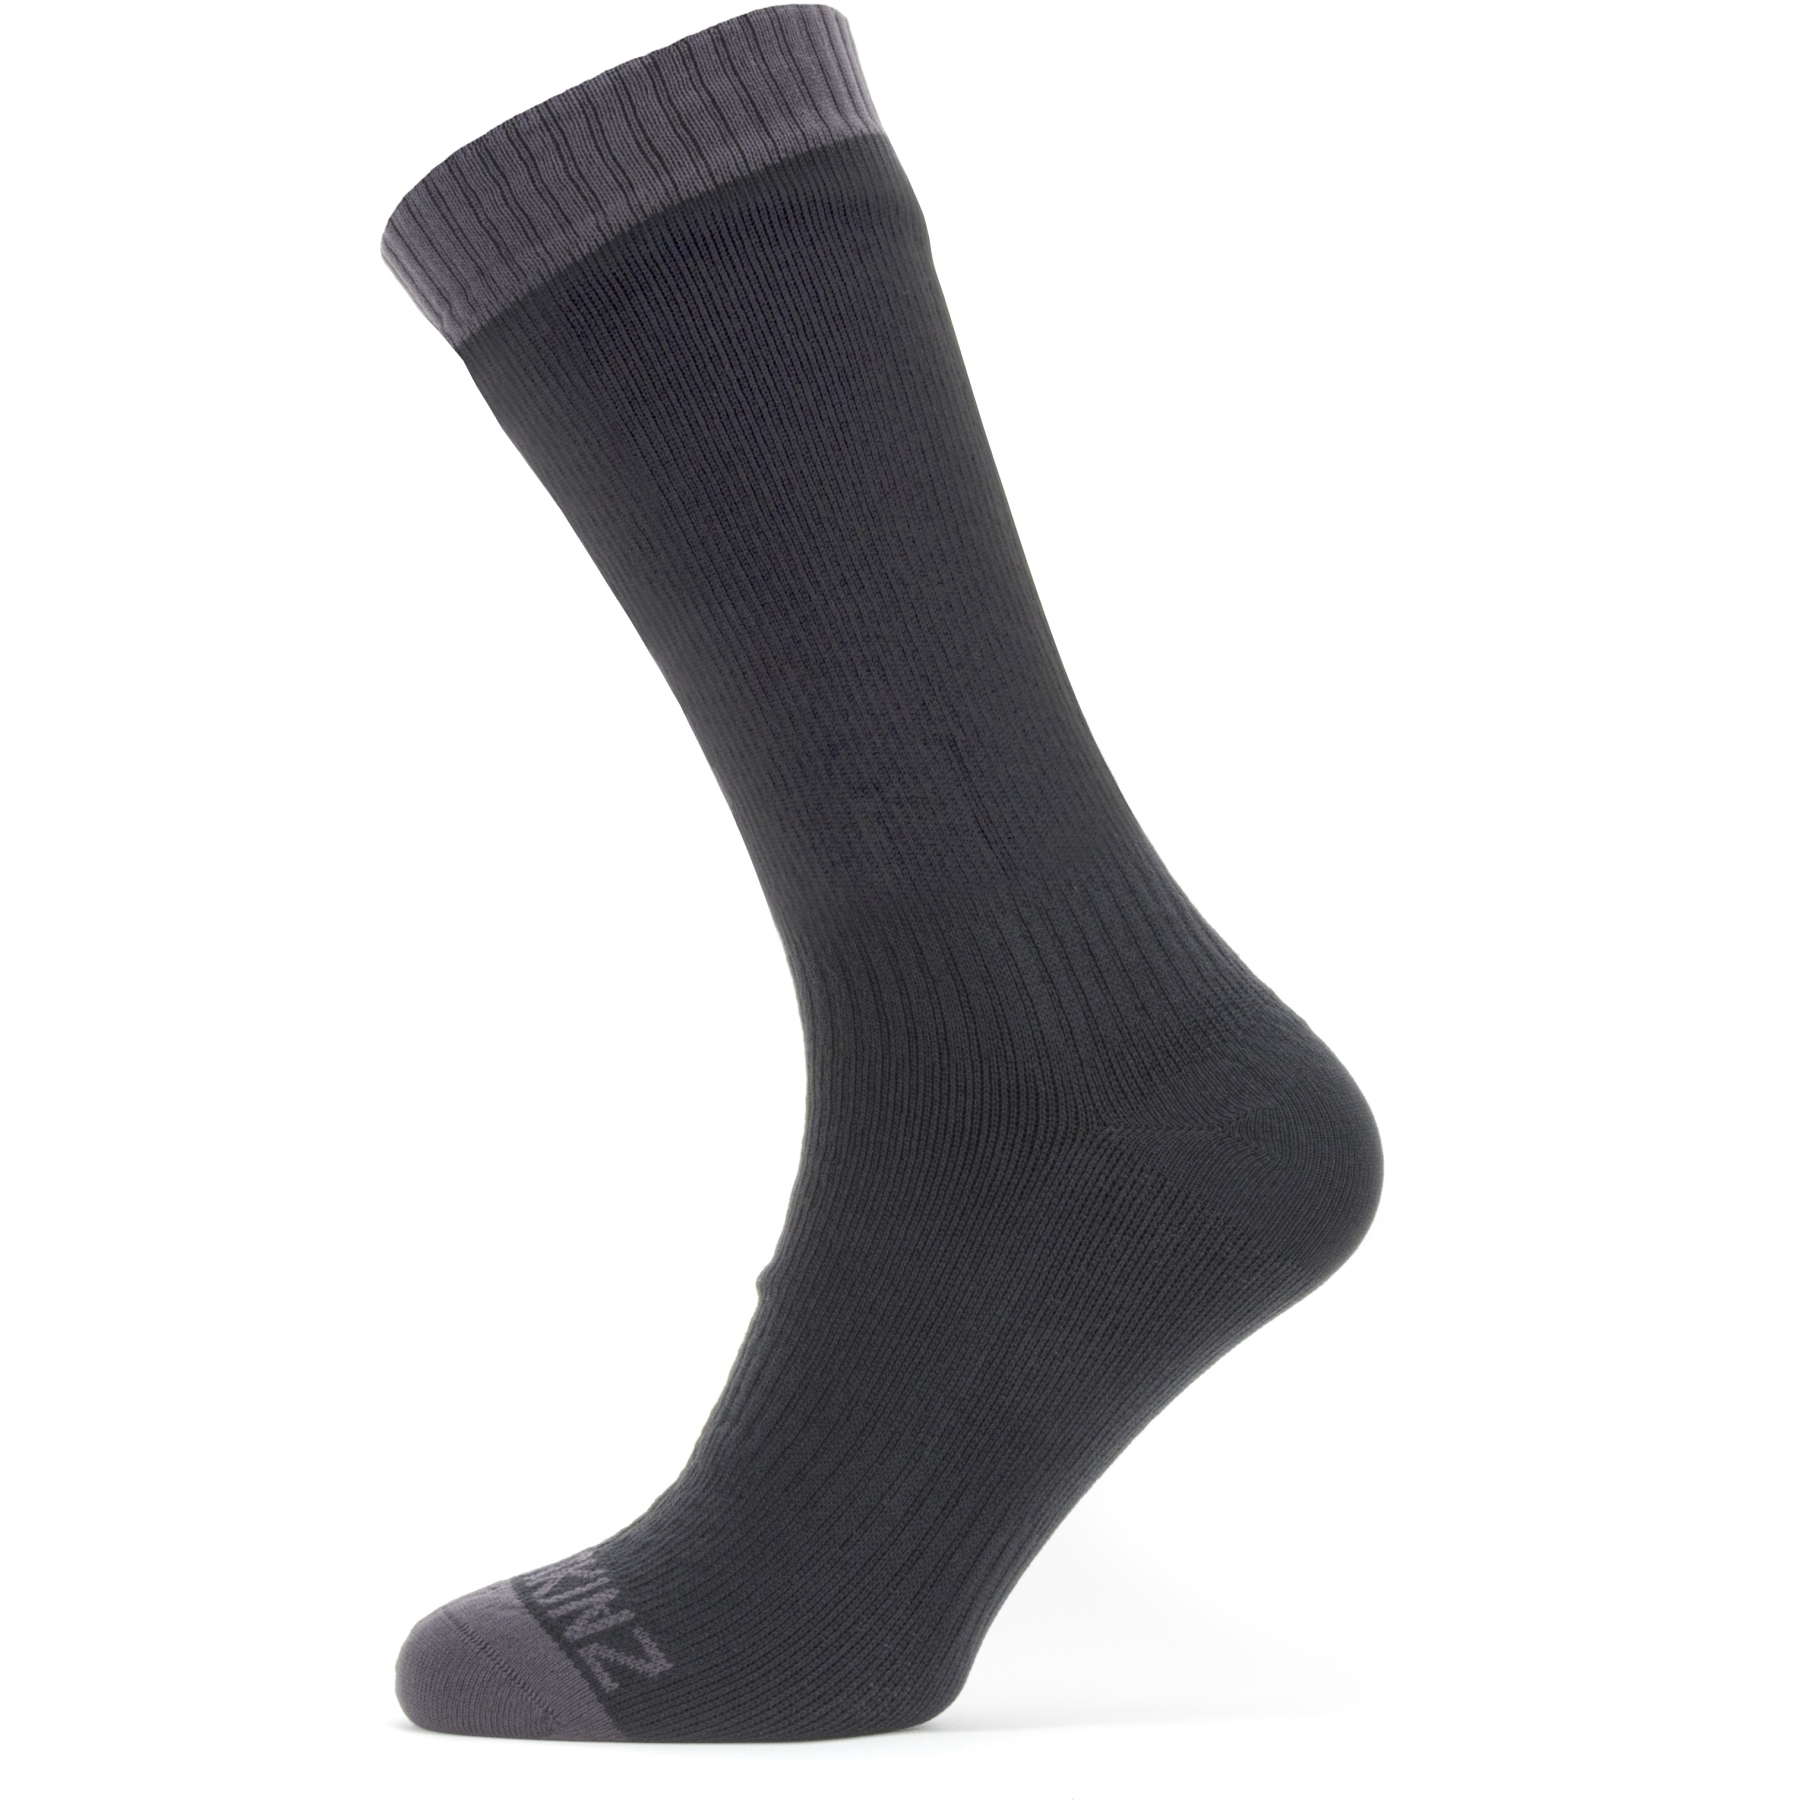 Produktbild von SealSkinz Wiveton Wasserdichte, mittellange Socken für warmes Wetter - Schwarz/Grau